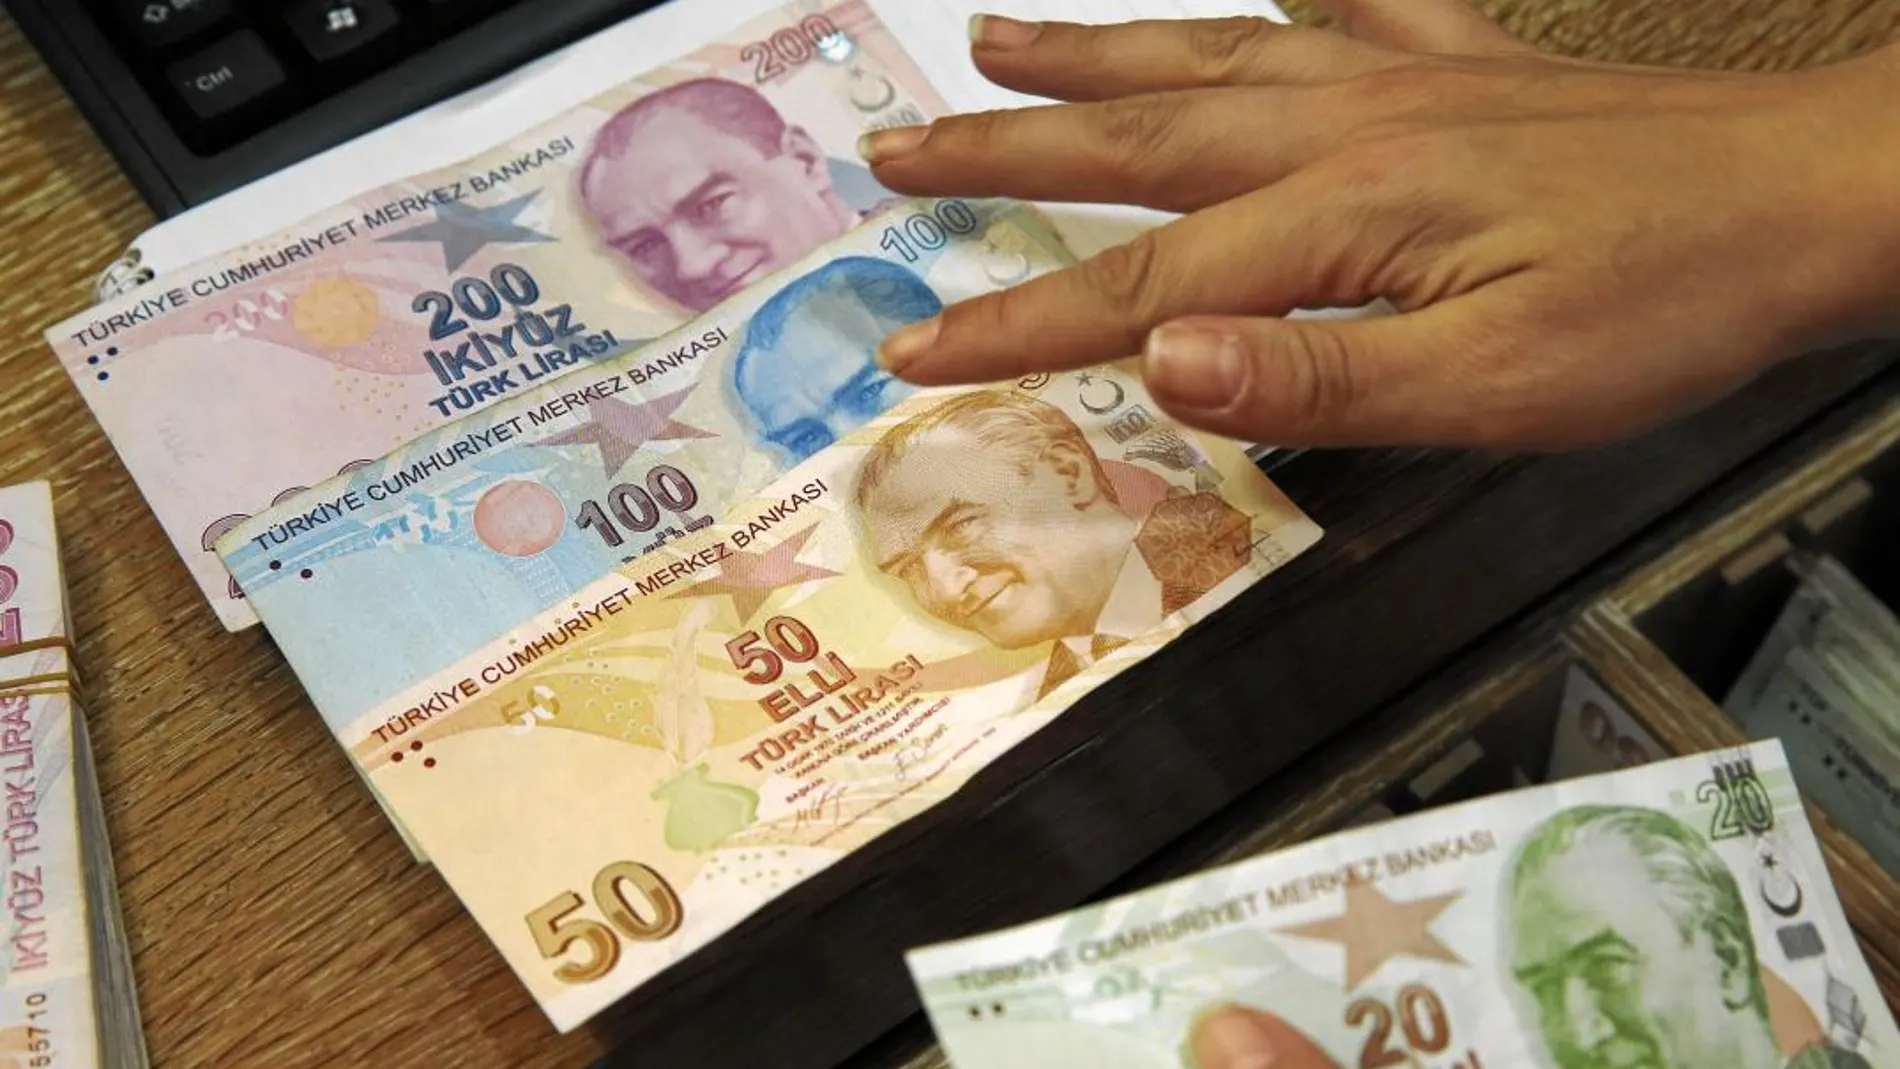 La lira turca está viviendo unos momentos muy difíciles. Las oscilaciones de su cambio con el dólar preocupan a bancos e inversores de todo el mundo